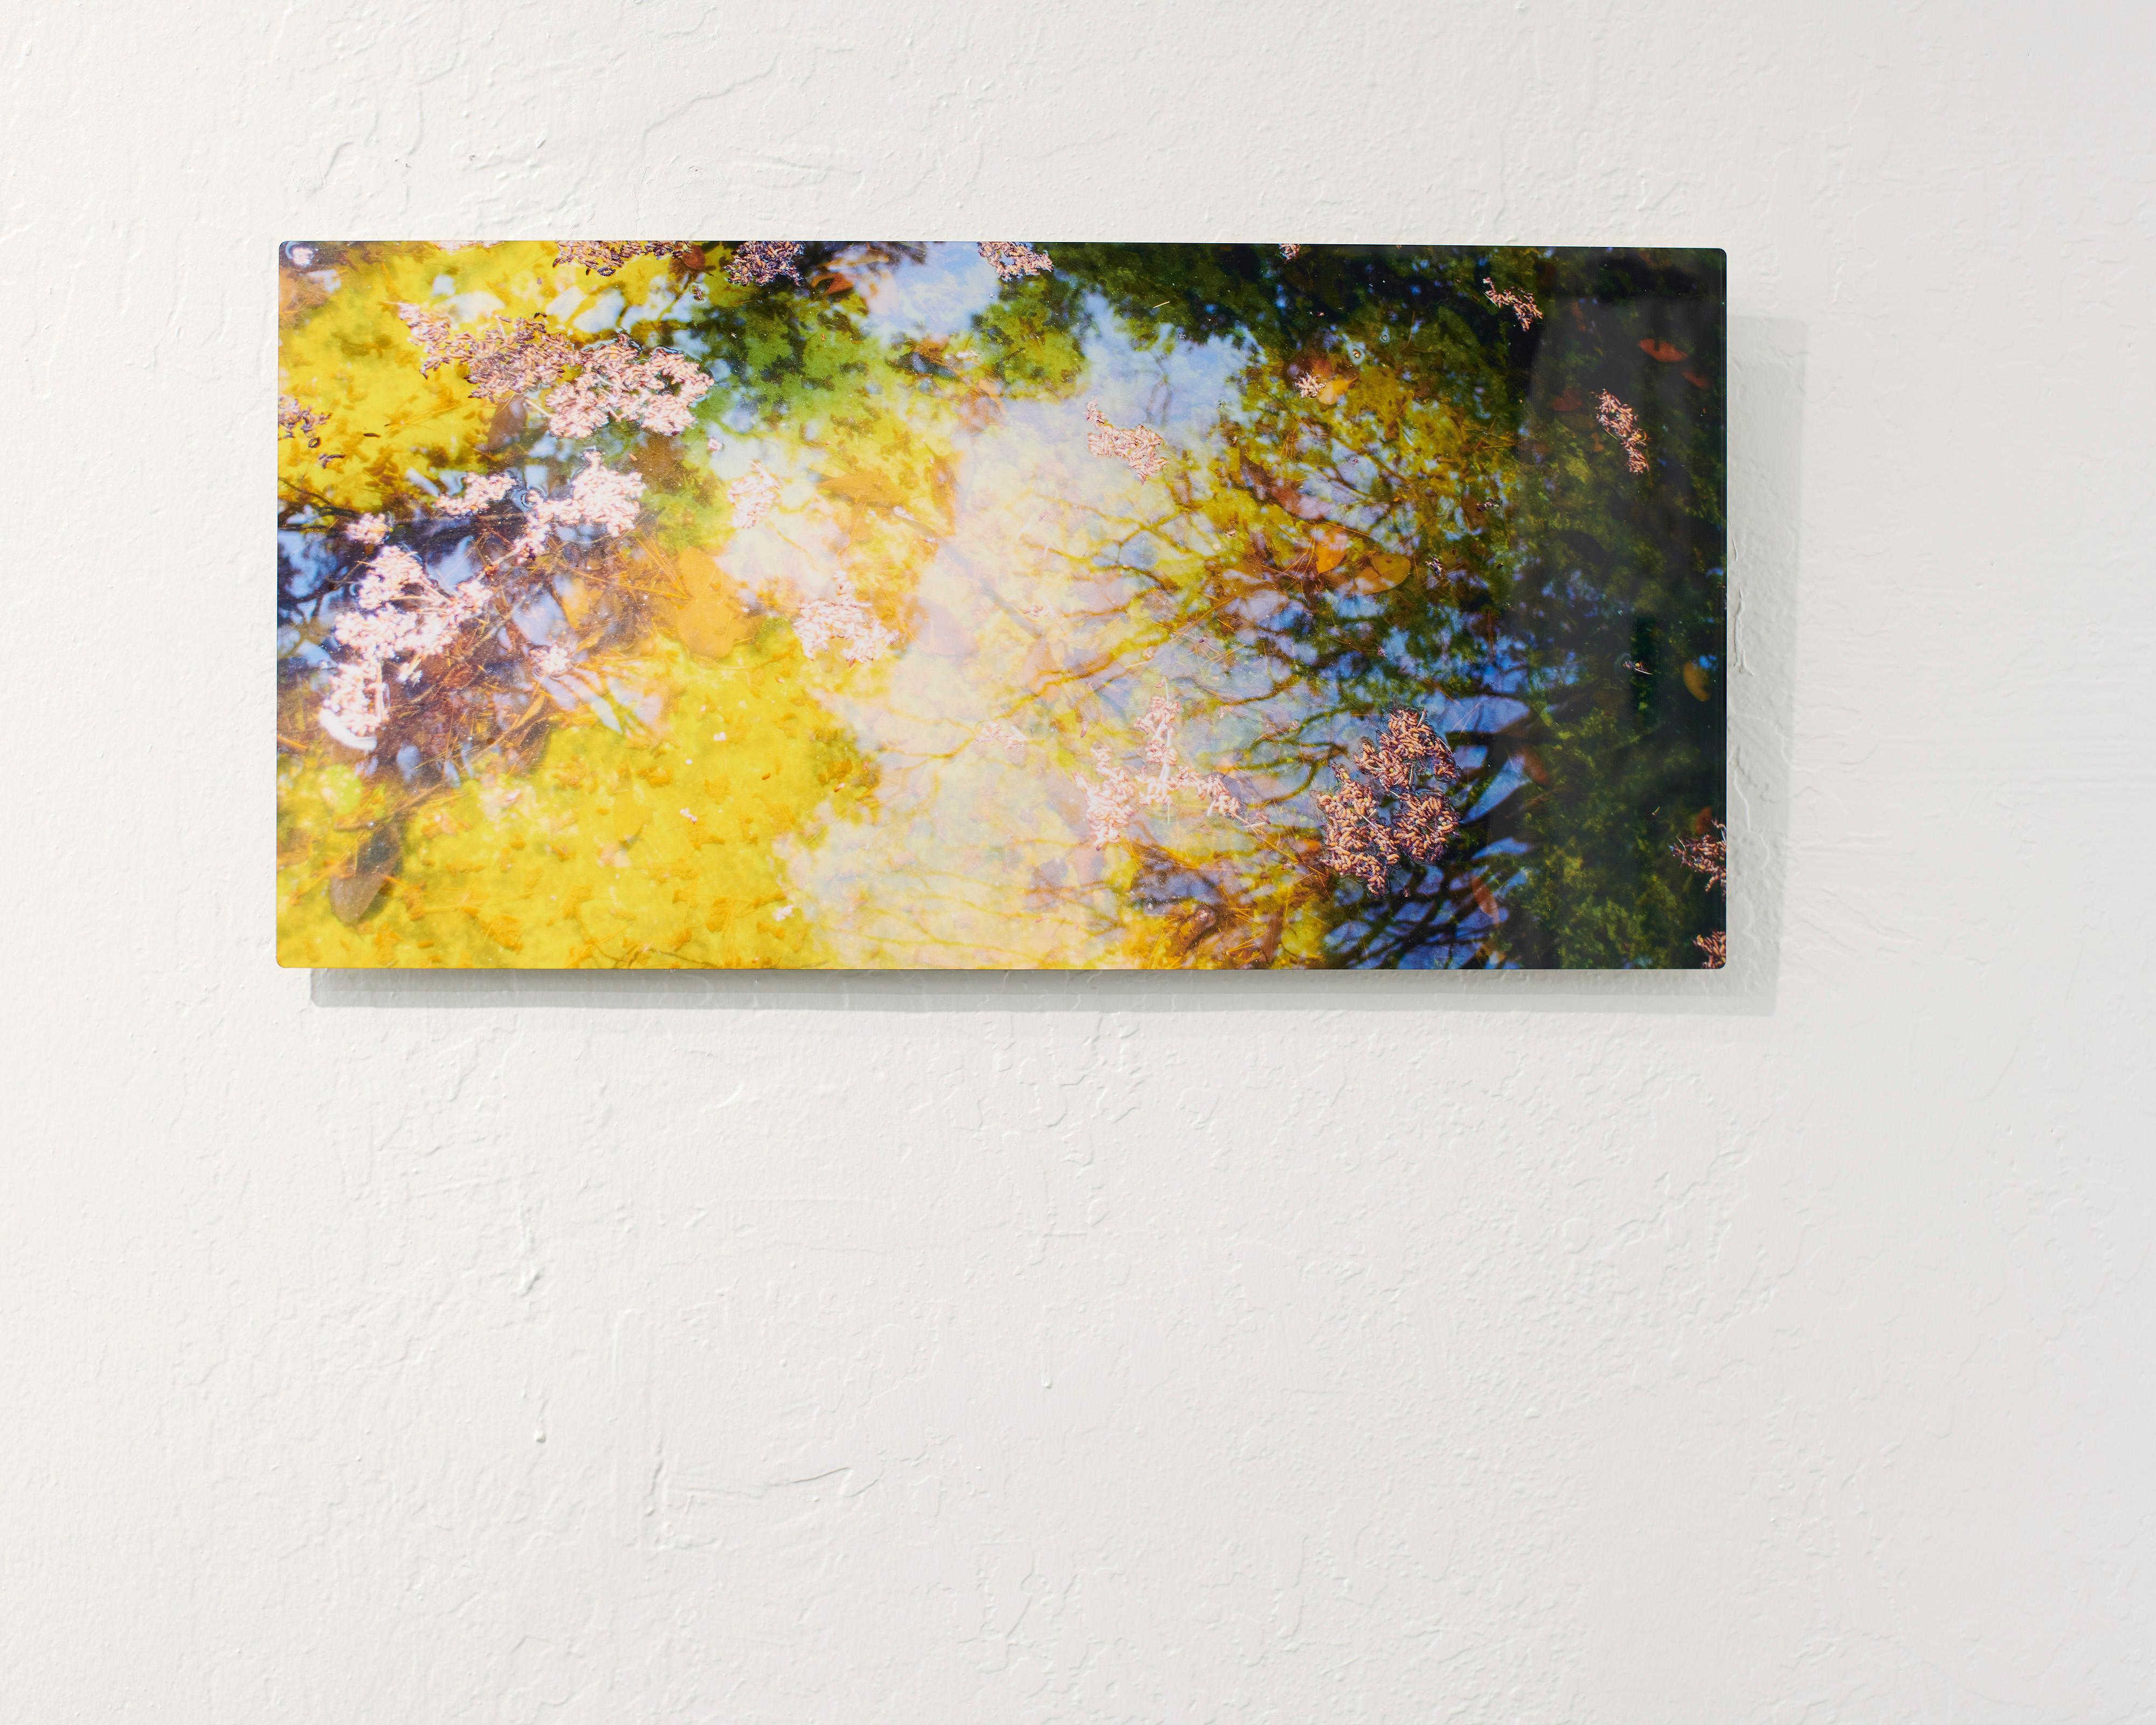 Reflection Nr. 4- Abstrakte Landschaftsfotografie eines Teichs / Bäumen in Gelb+ Grün (Zeitgenössisch), Photograph, von Rachel Berkowitz